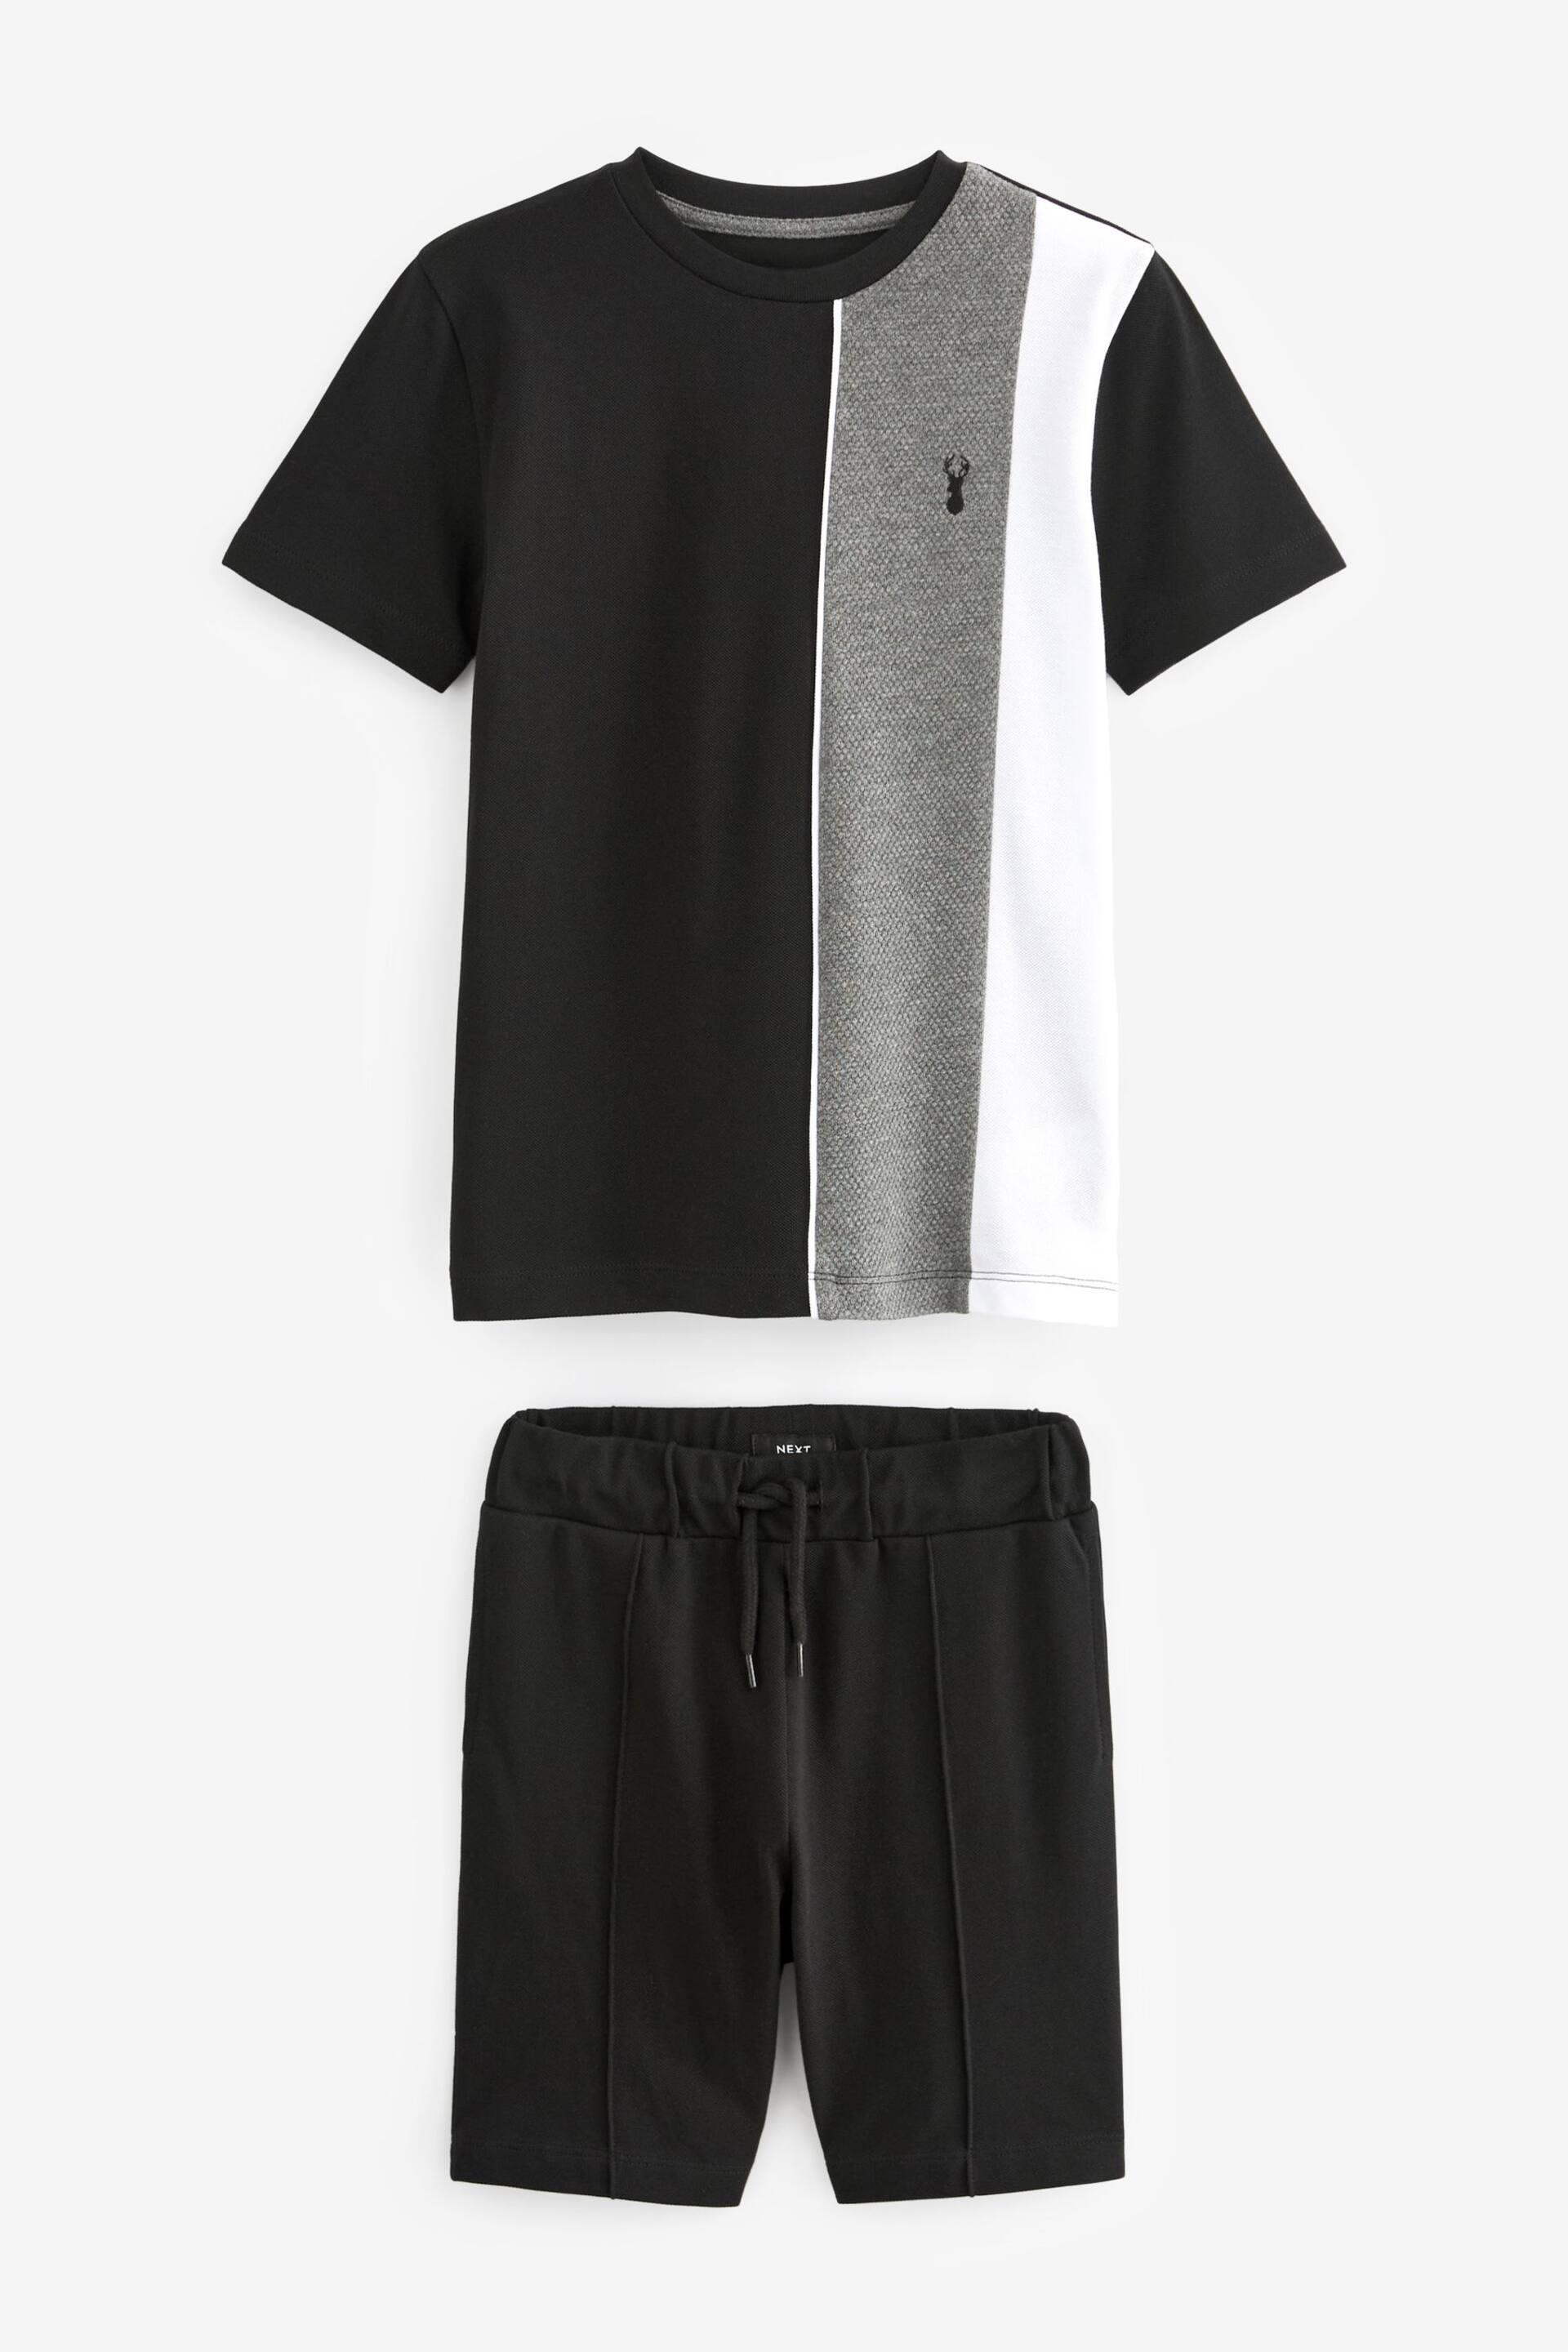 Black/Grey Colourblock T-Shirt And Shorts Set (3-16yrs) - Image 1 of 2